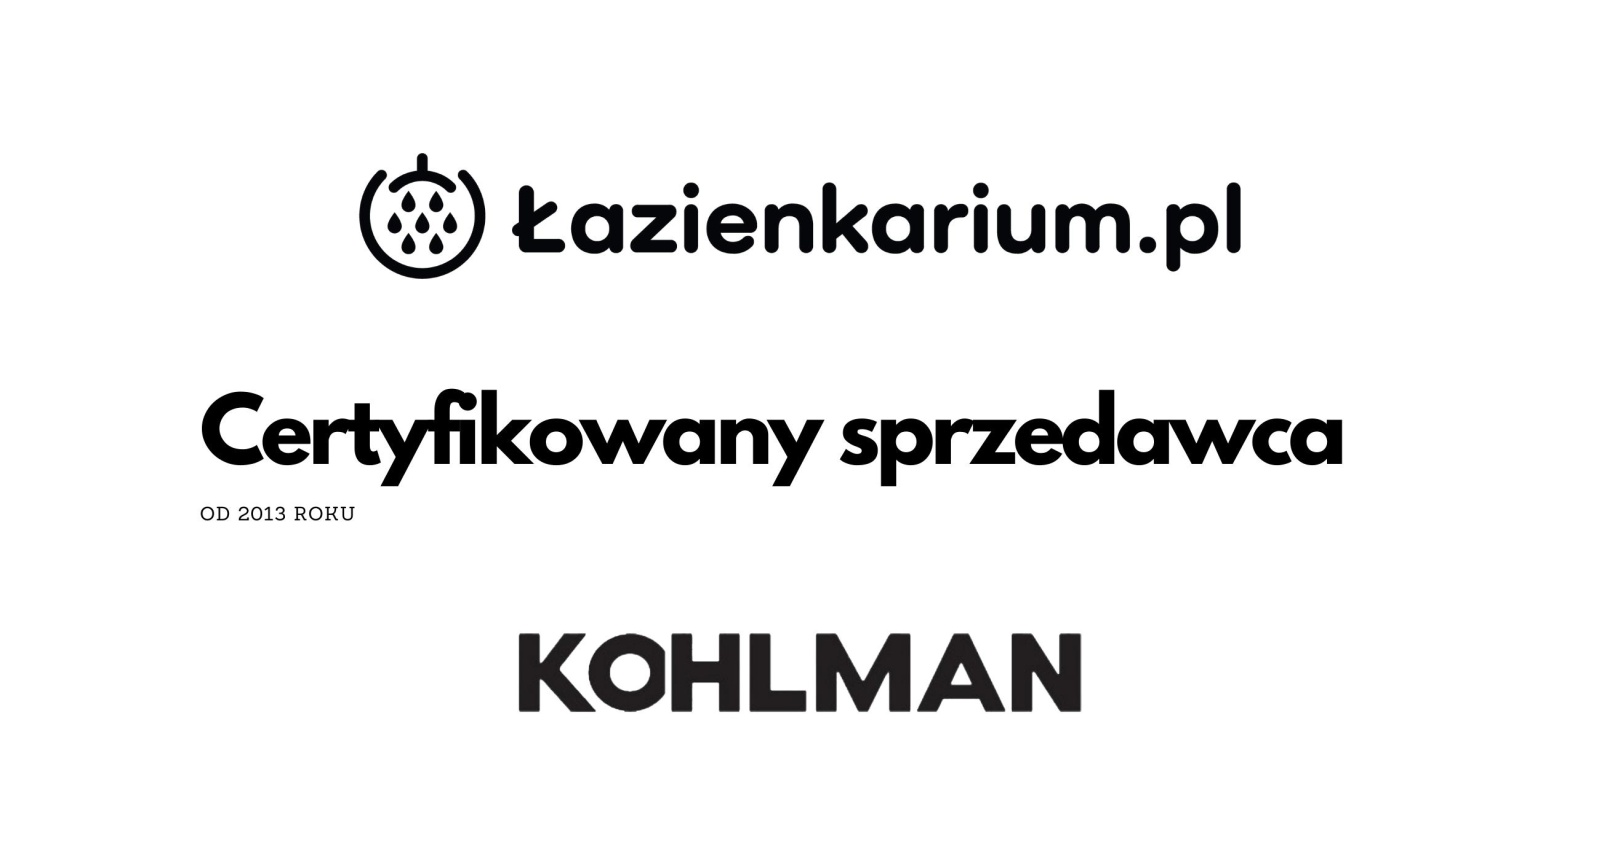 Kohlman Certyfikowany Sprzedawca Łazienkarium